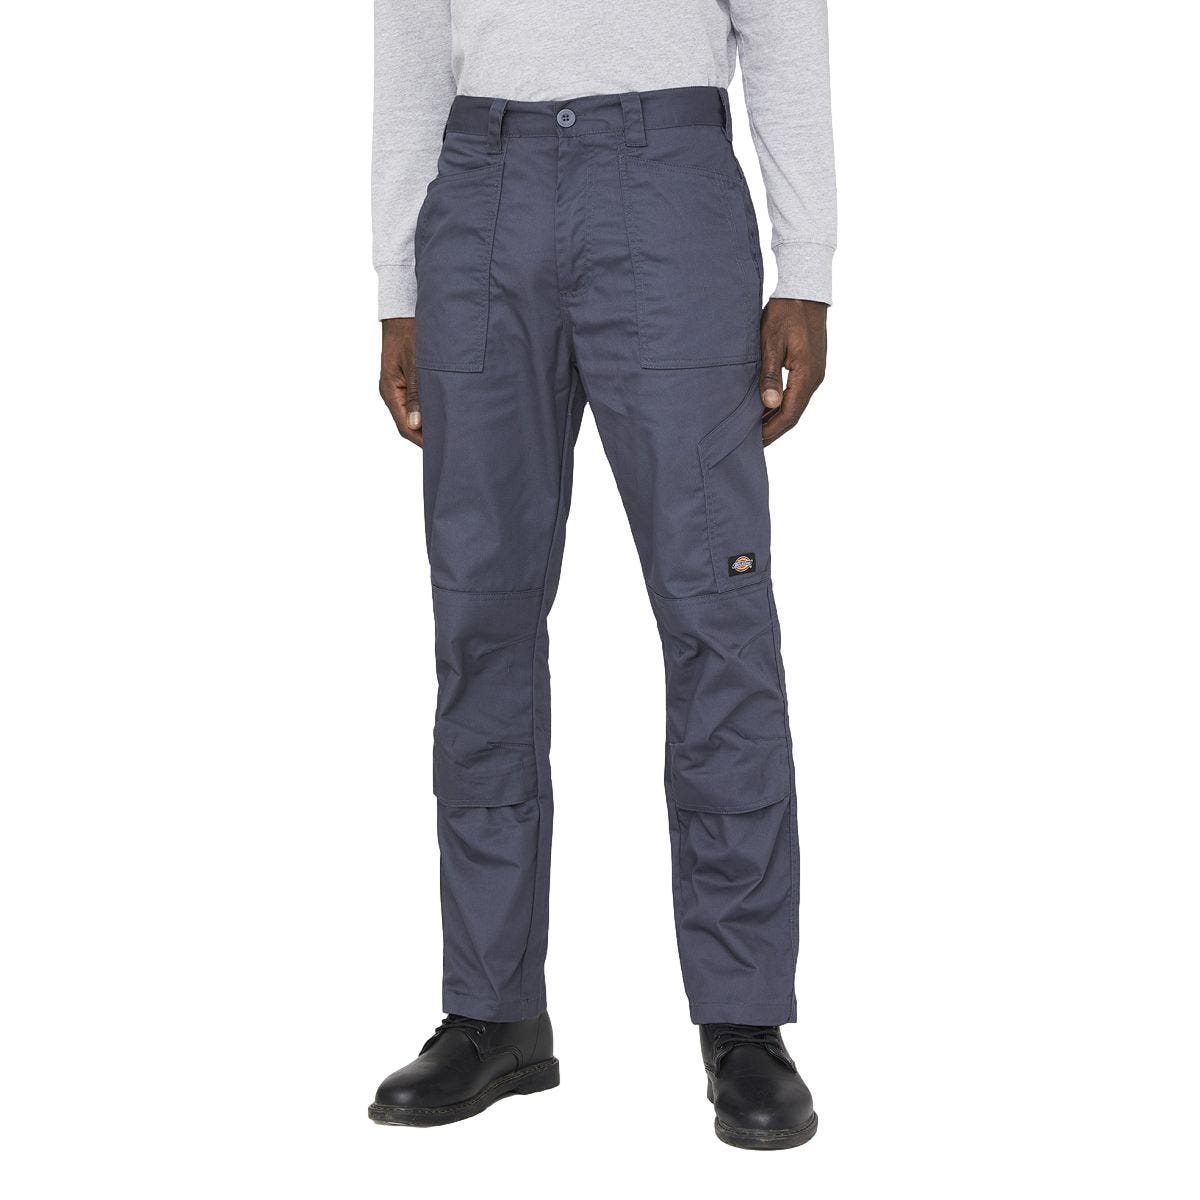 Pantalon de travail Action Flex gris - Dickies - Taille 46 0